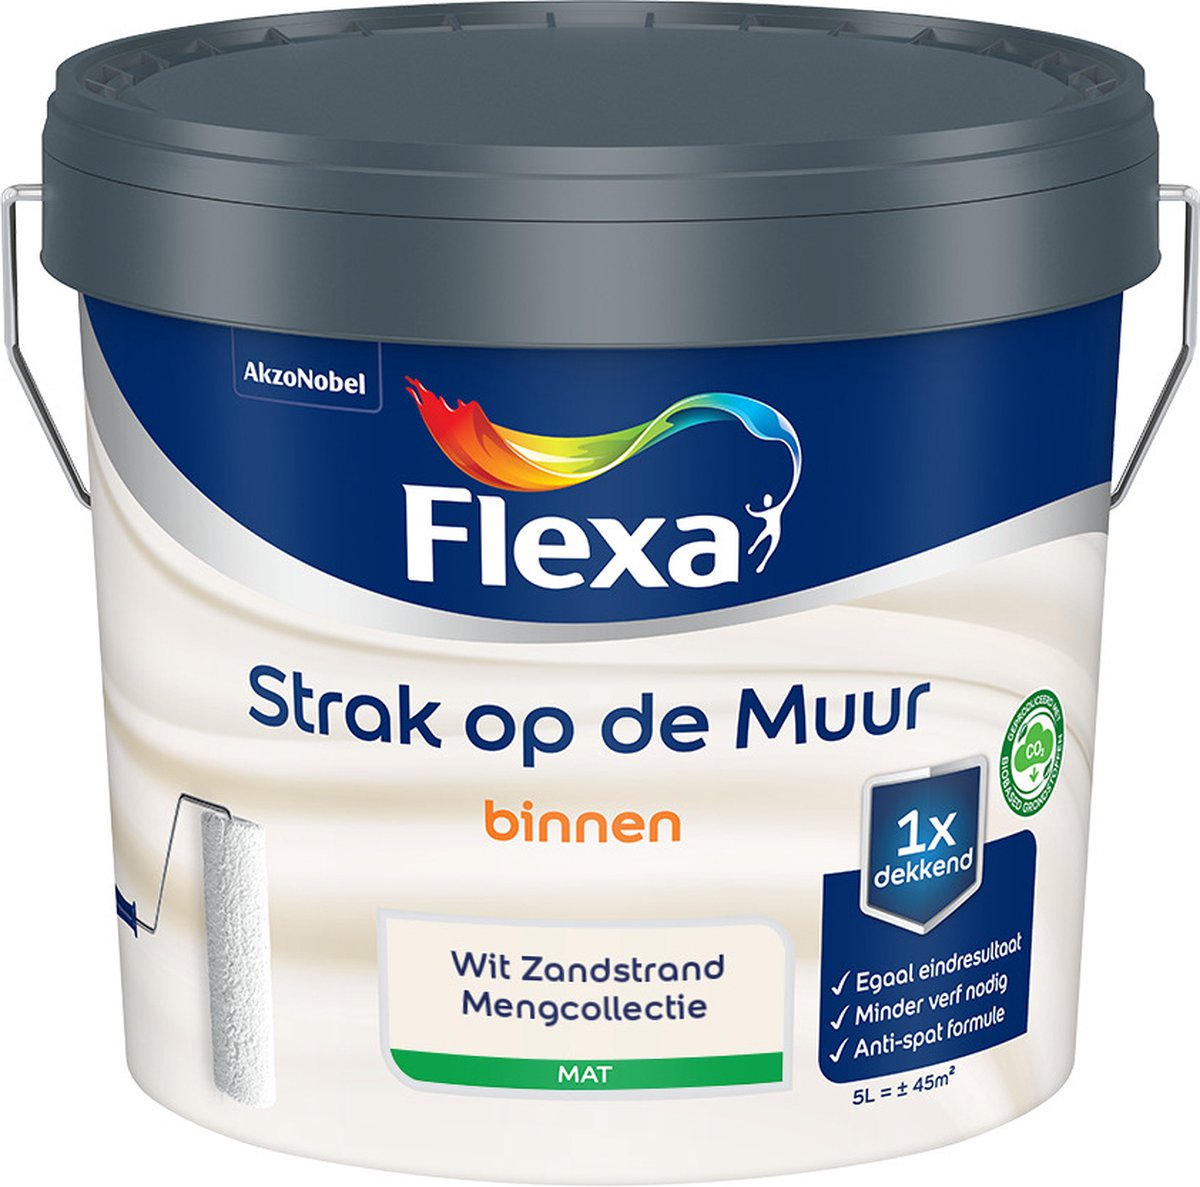 Flexa Strak op de muur - Muurverf - Mengcollectie - Wit Zandstrand - 5 Liter